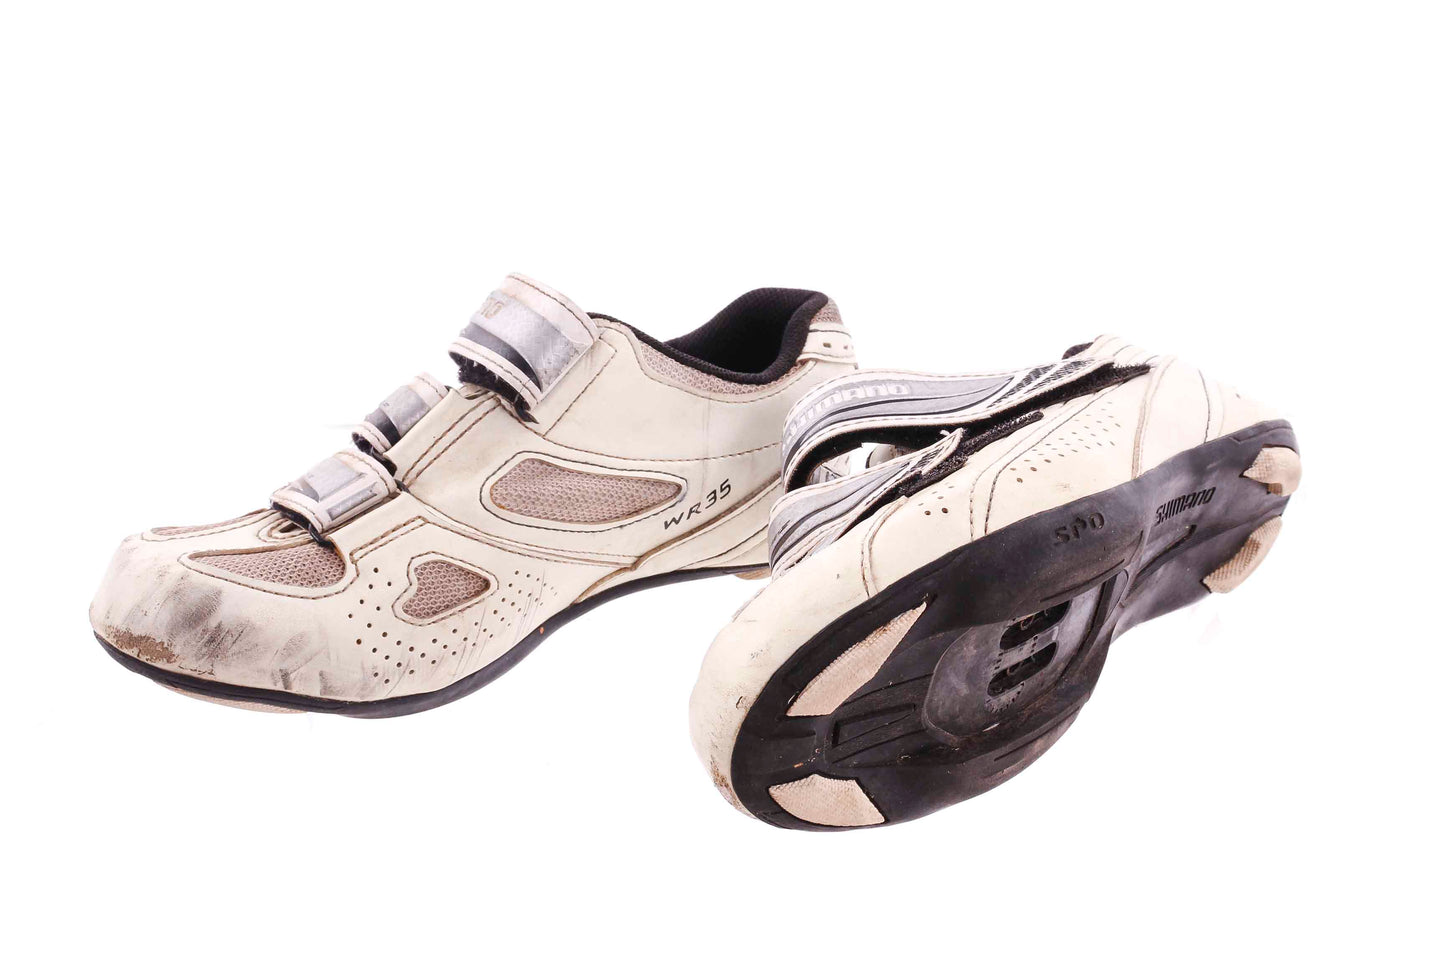 USED Shimano SH-WR35 Women's Road Cycling Shoes Size 37 EU 5.5 US Women's 2 Bolt